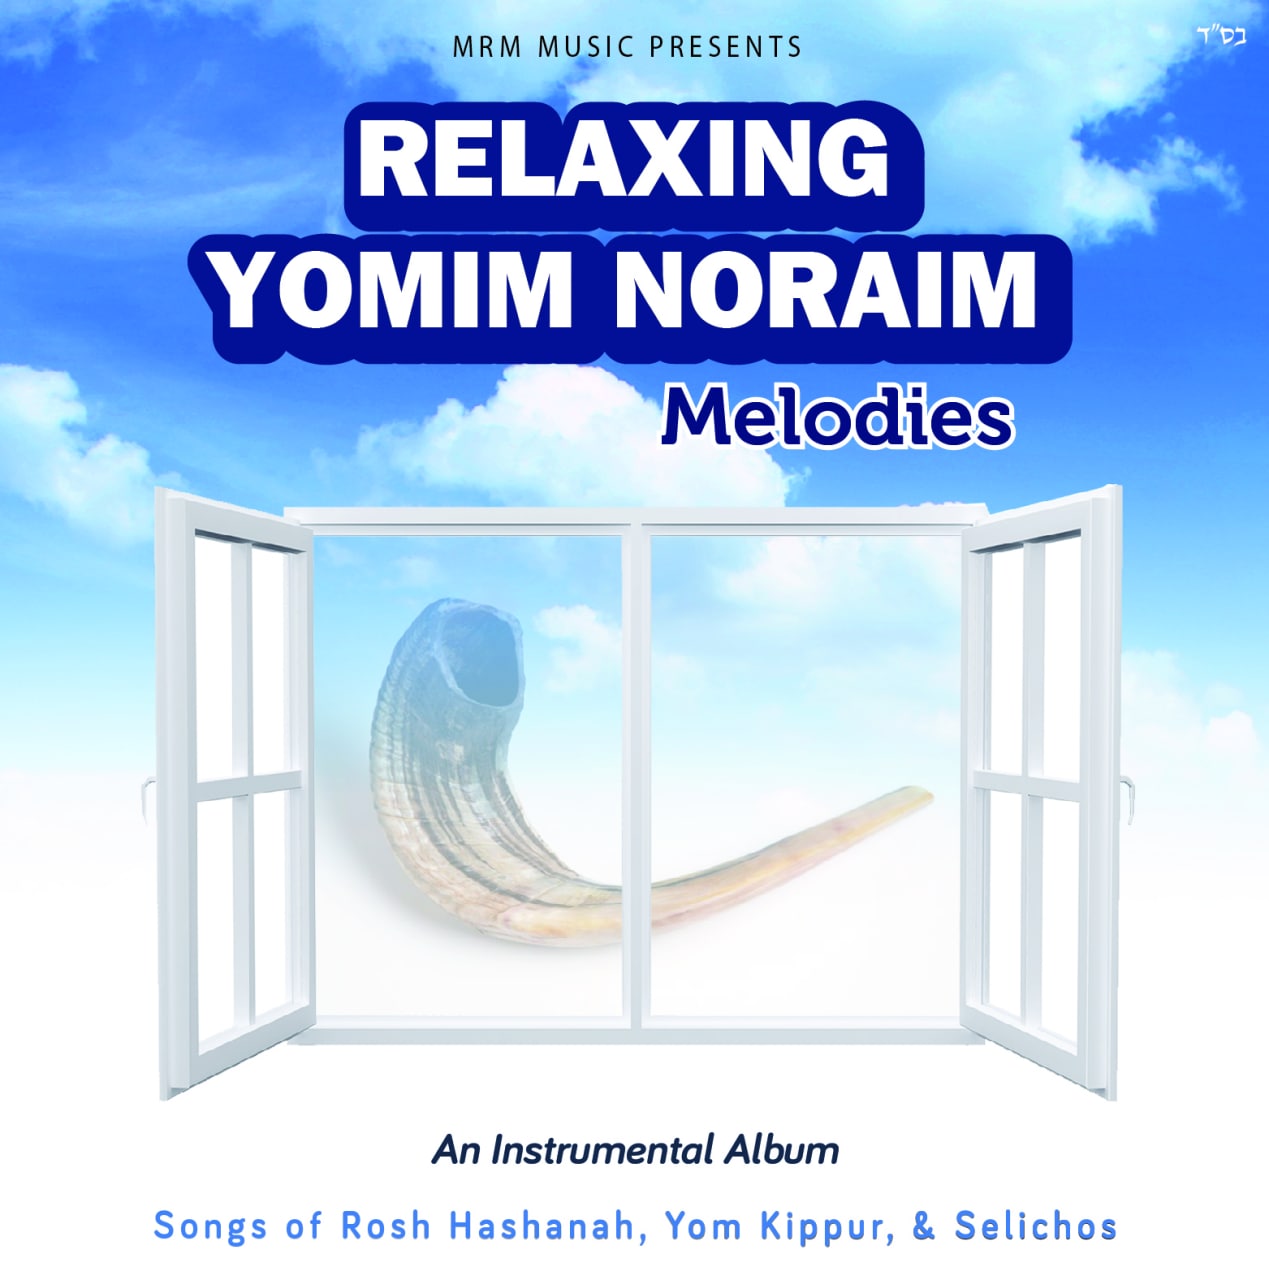 MRM Music - Relaxing Yomim Noraim Melodies